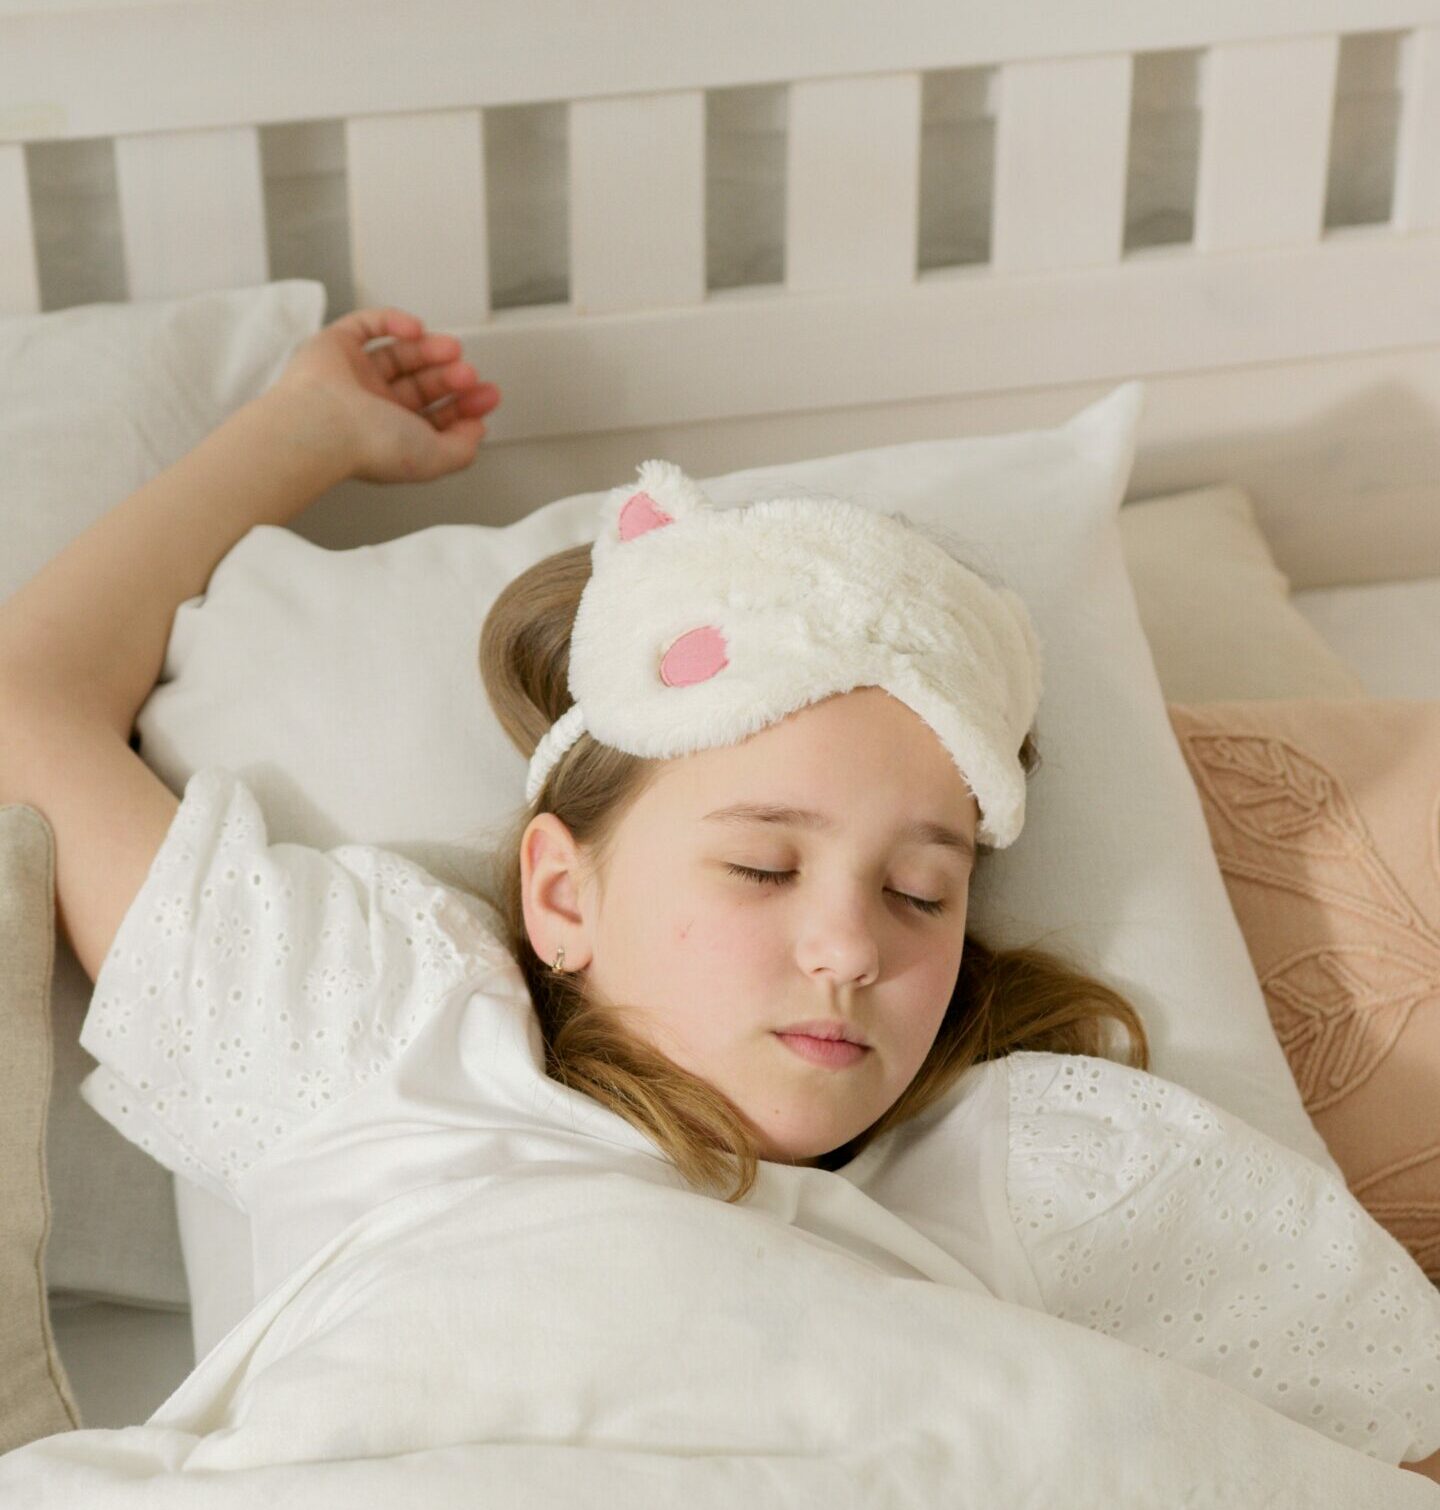 Apneia Obstrutiva do Sono em crianças: Conduta terapêutica